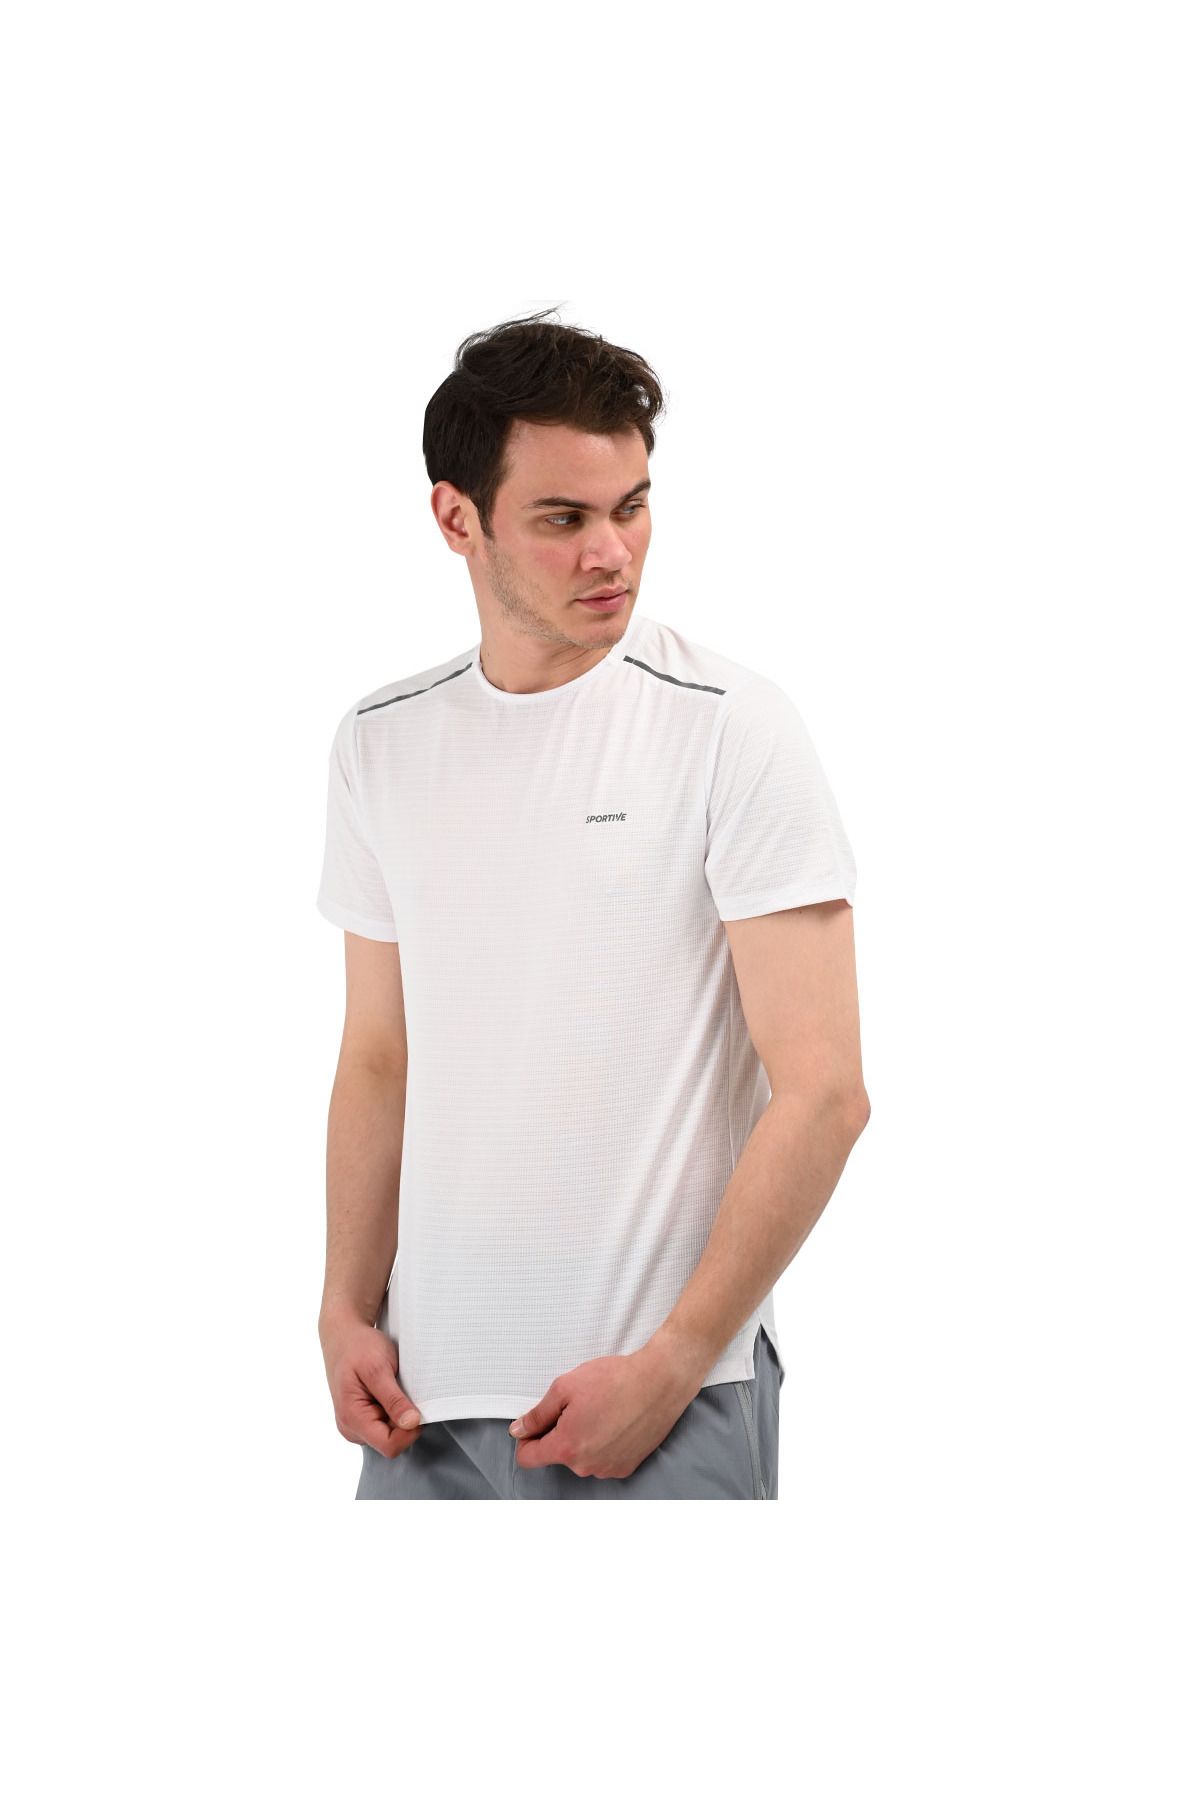 Sportive Conforto Erkek Beyaz Antrenman T-shirt 22ketp18d01-byz